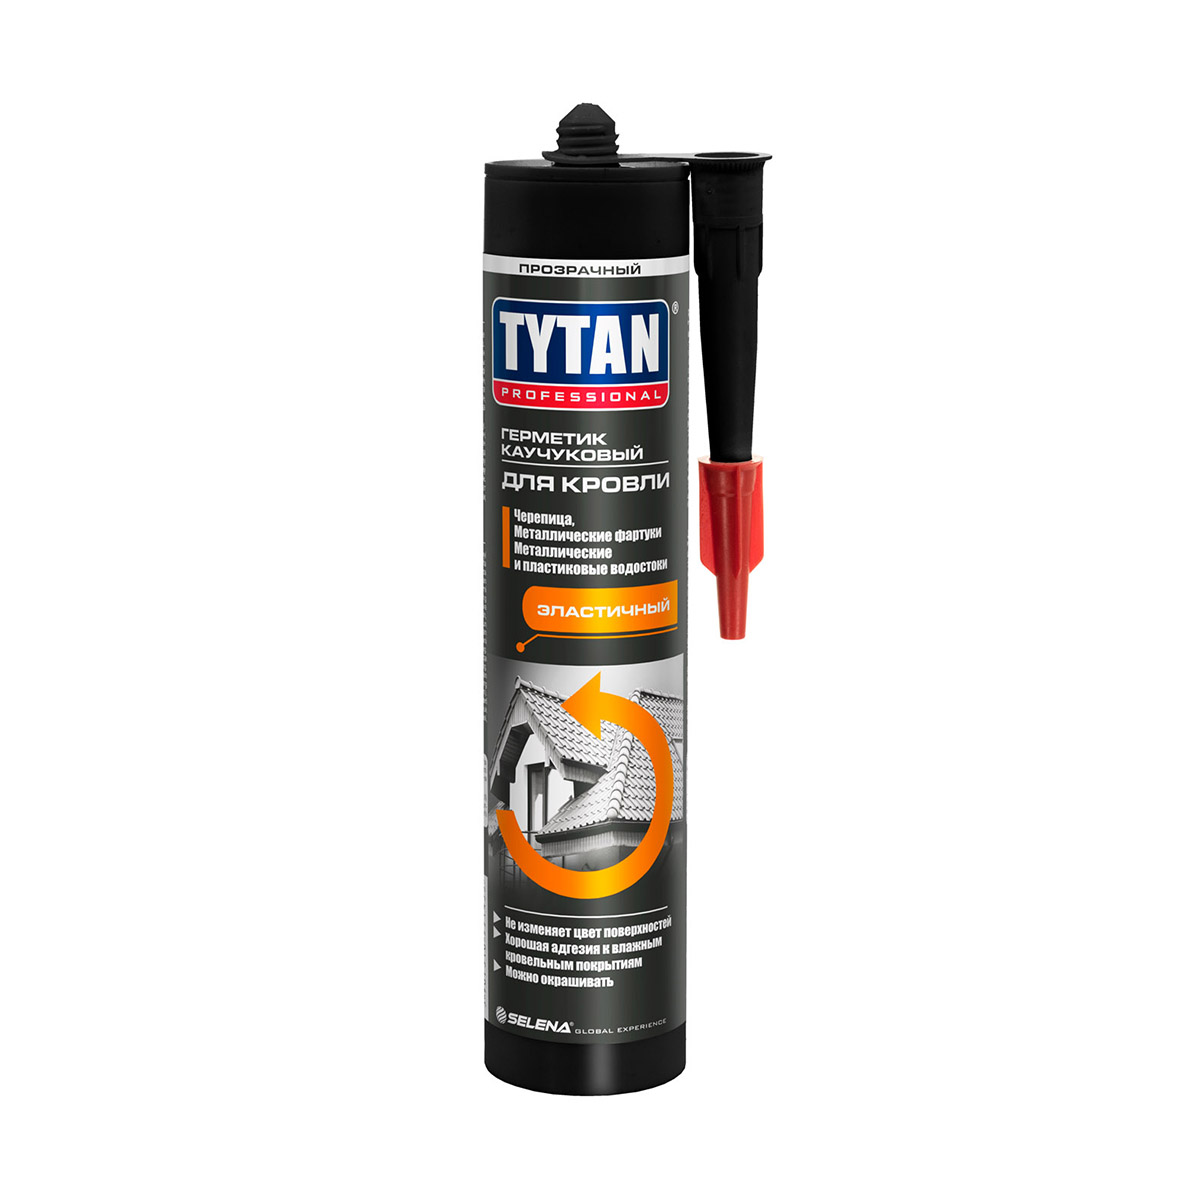 Герметик каучуковый Tytan Professional, для кровли, 310 мл, прозрачный каучуковый герметик для кровли tytan